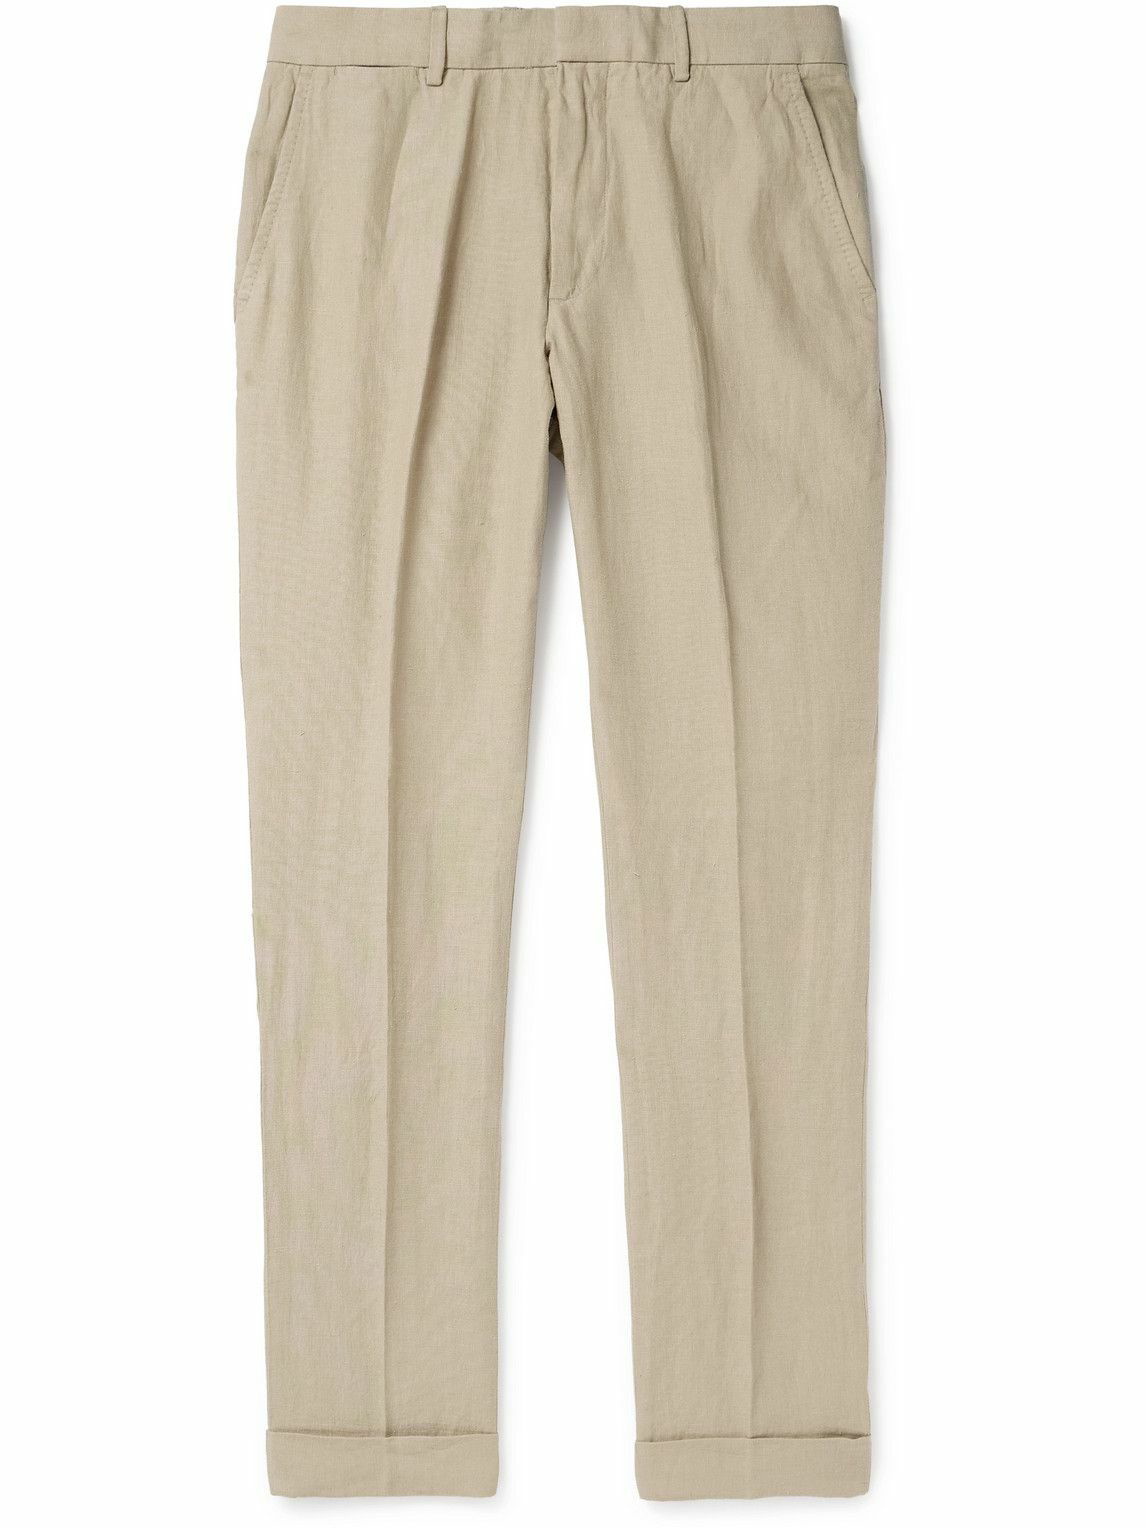 Lauren Ralph Lauren, Pants & Jumpsuits, Lauren Ralph Lauren Bright Bold  Eye Catching Paisley Print Pants 2p